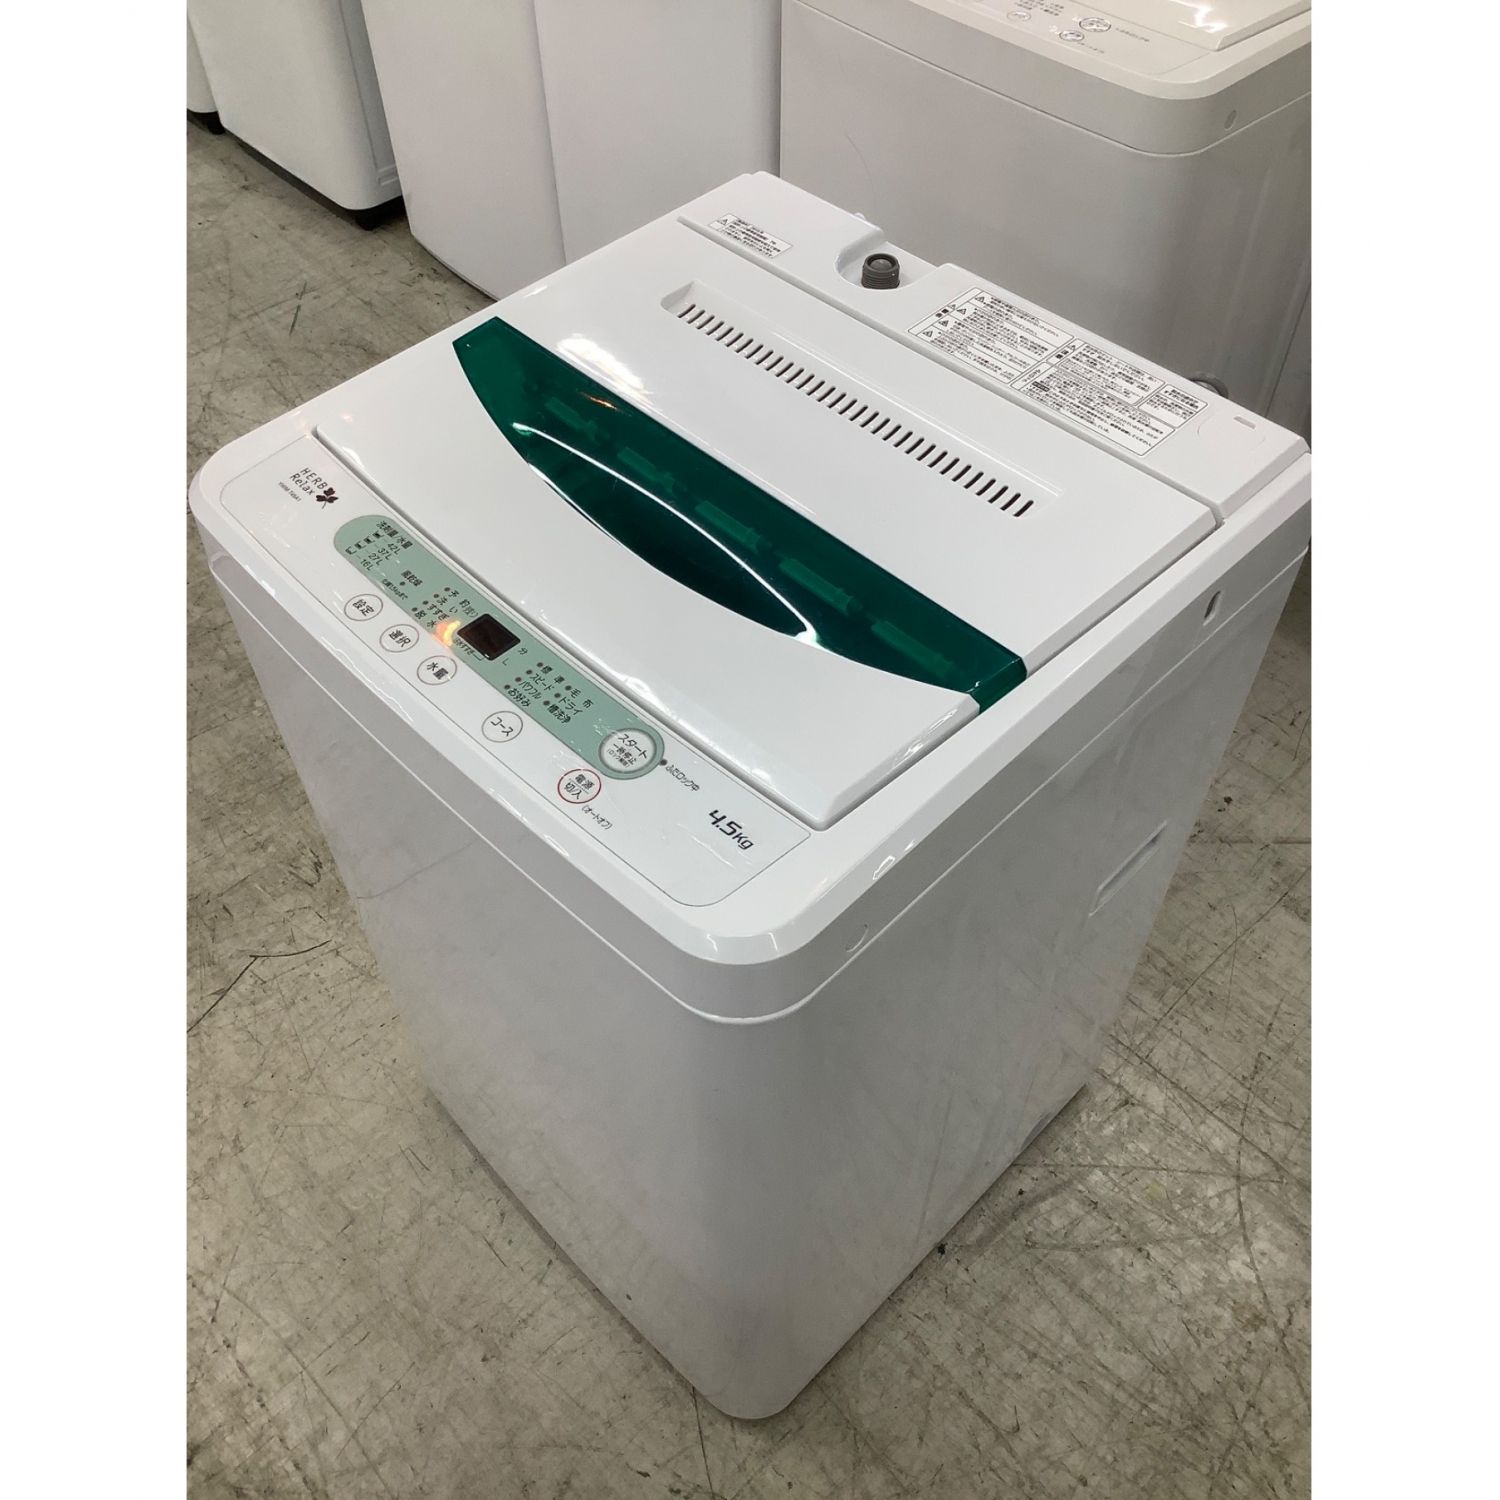 限定品】 30日迄 2017 YAMADA 4.5kg洗濯機P842